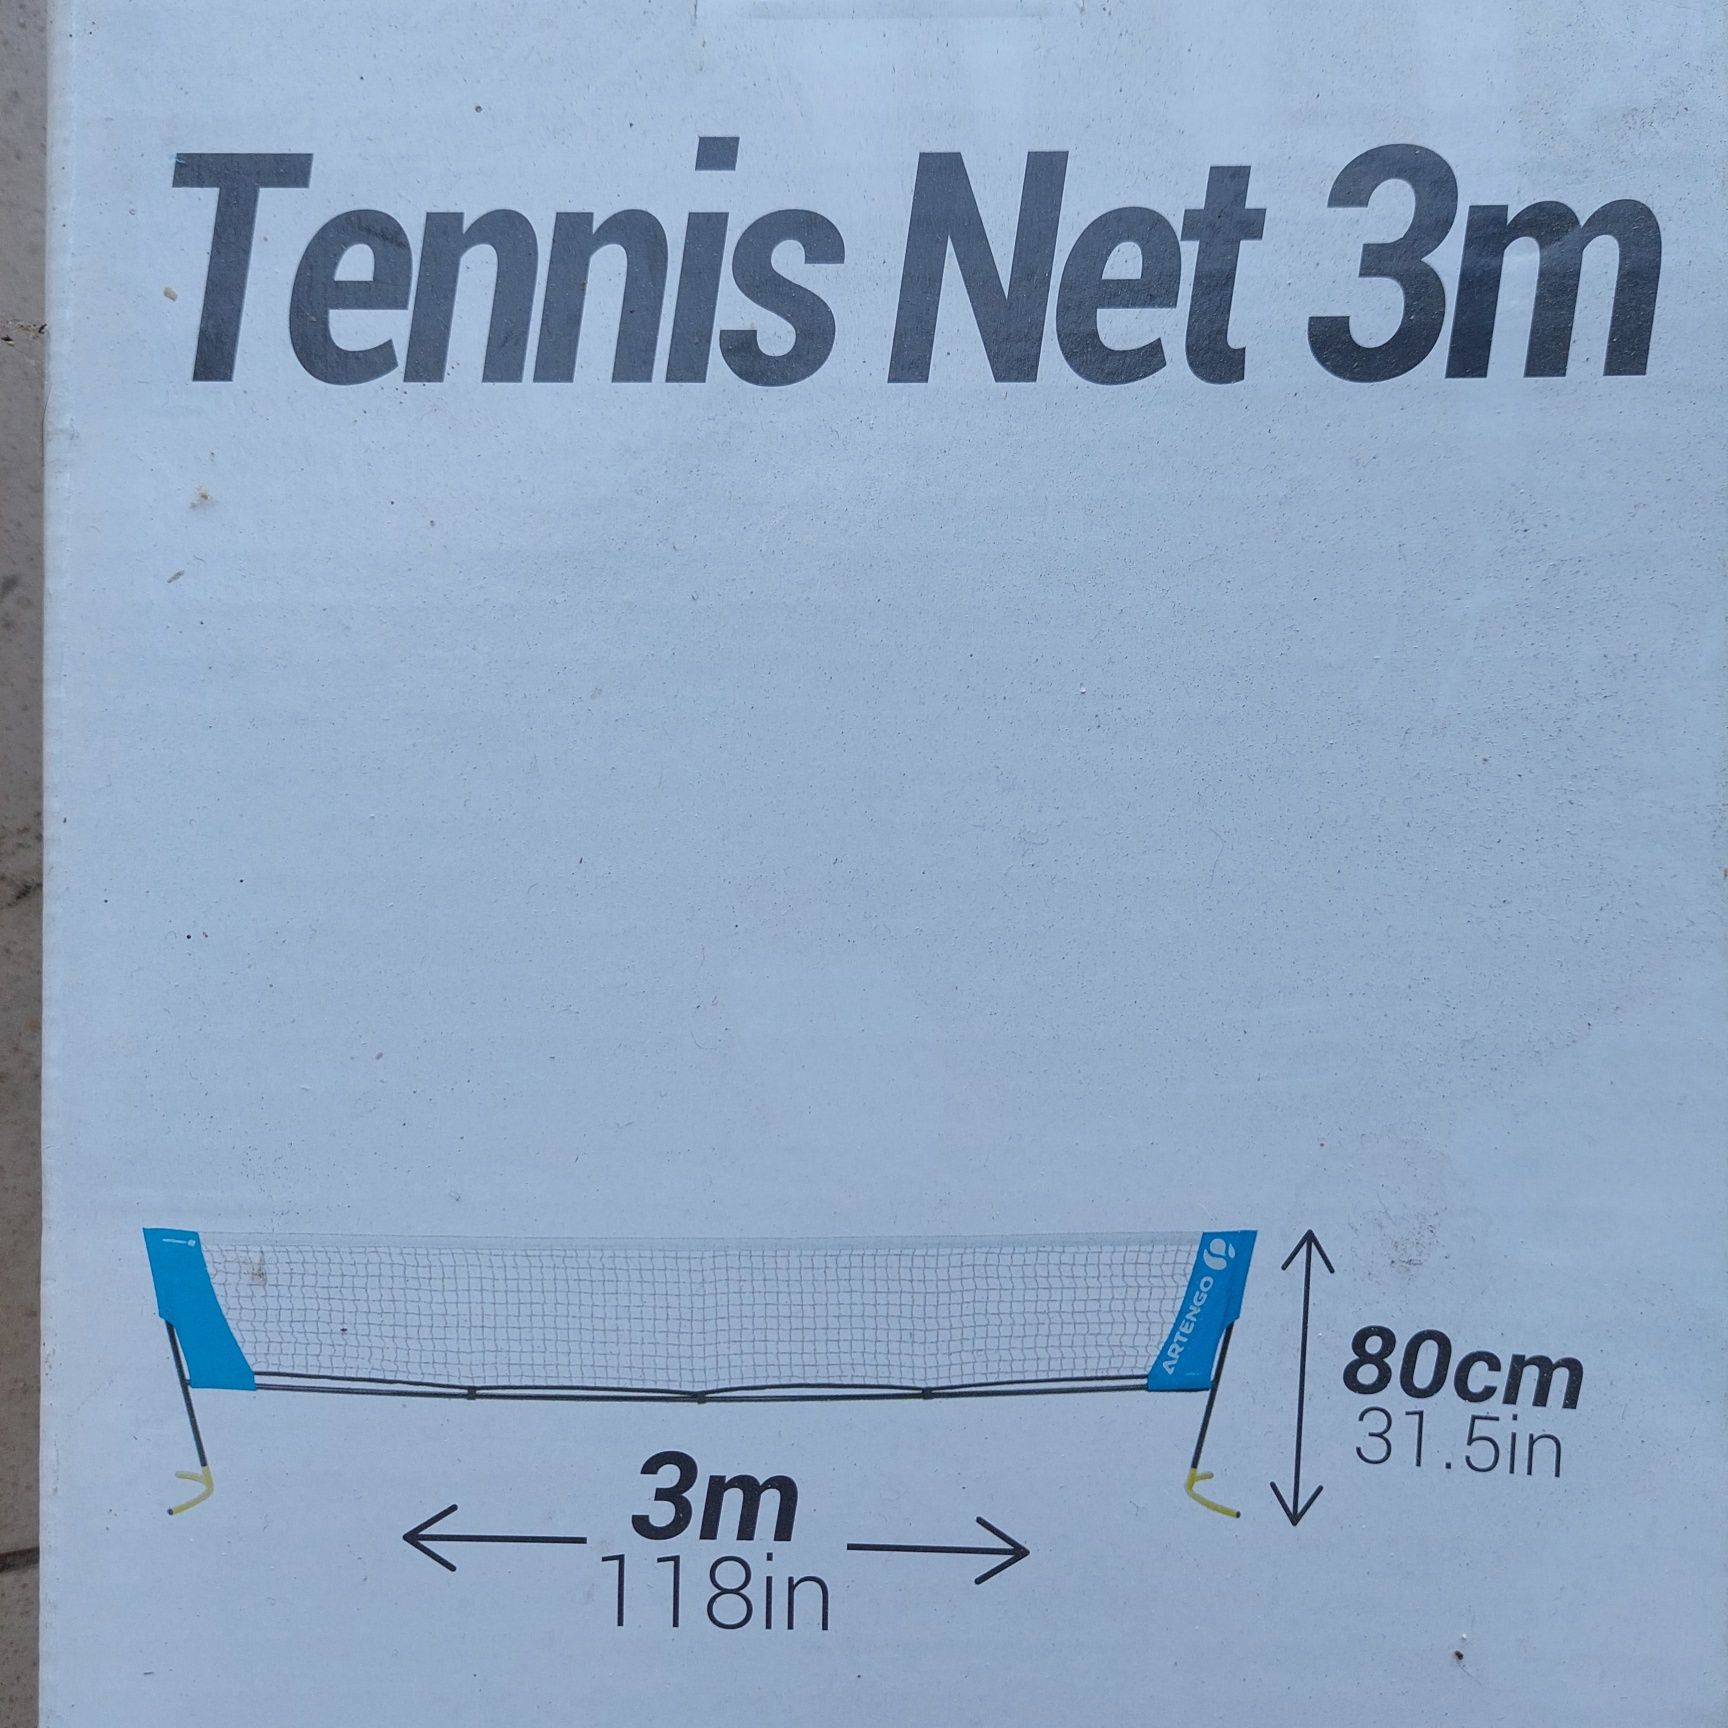 Siatka do tenisa artengo 3m juniorska, gratisy